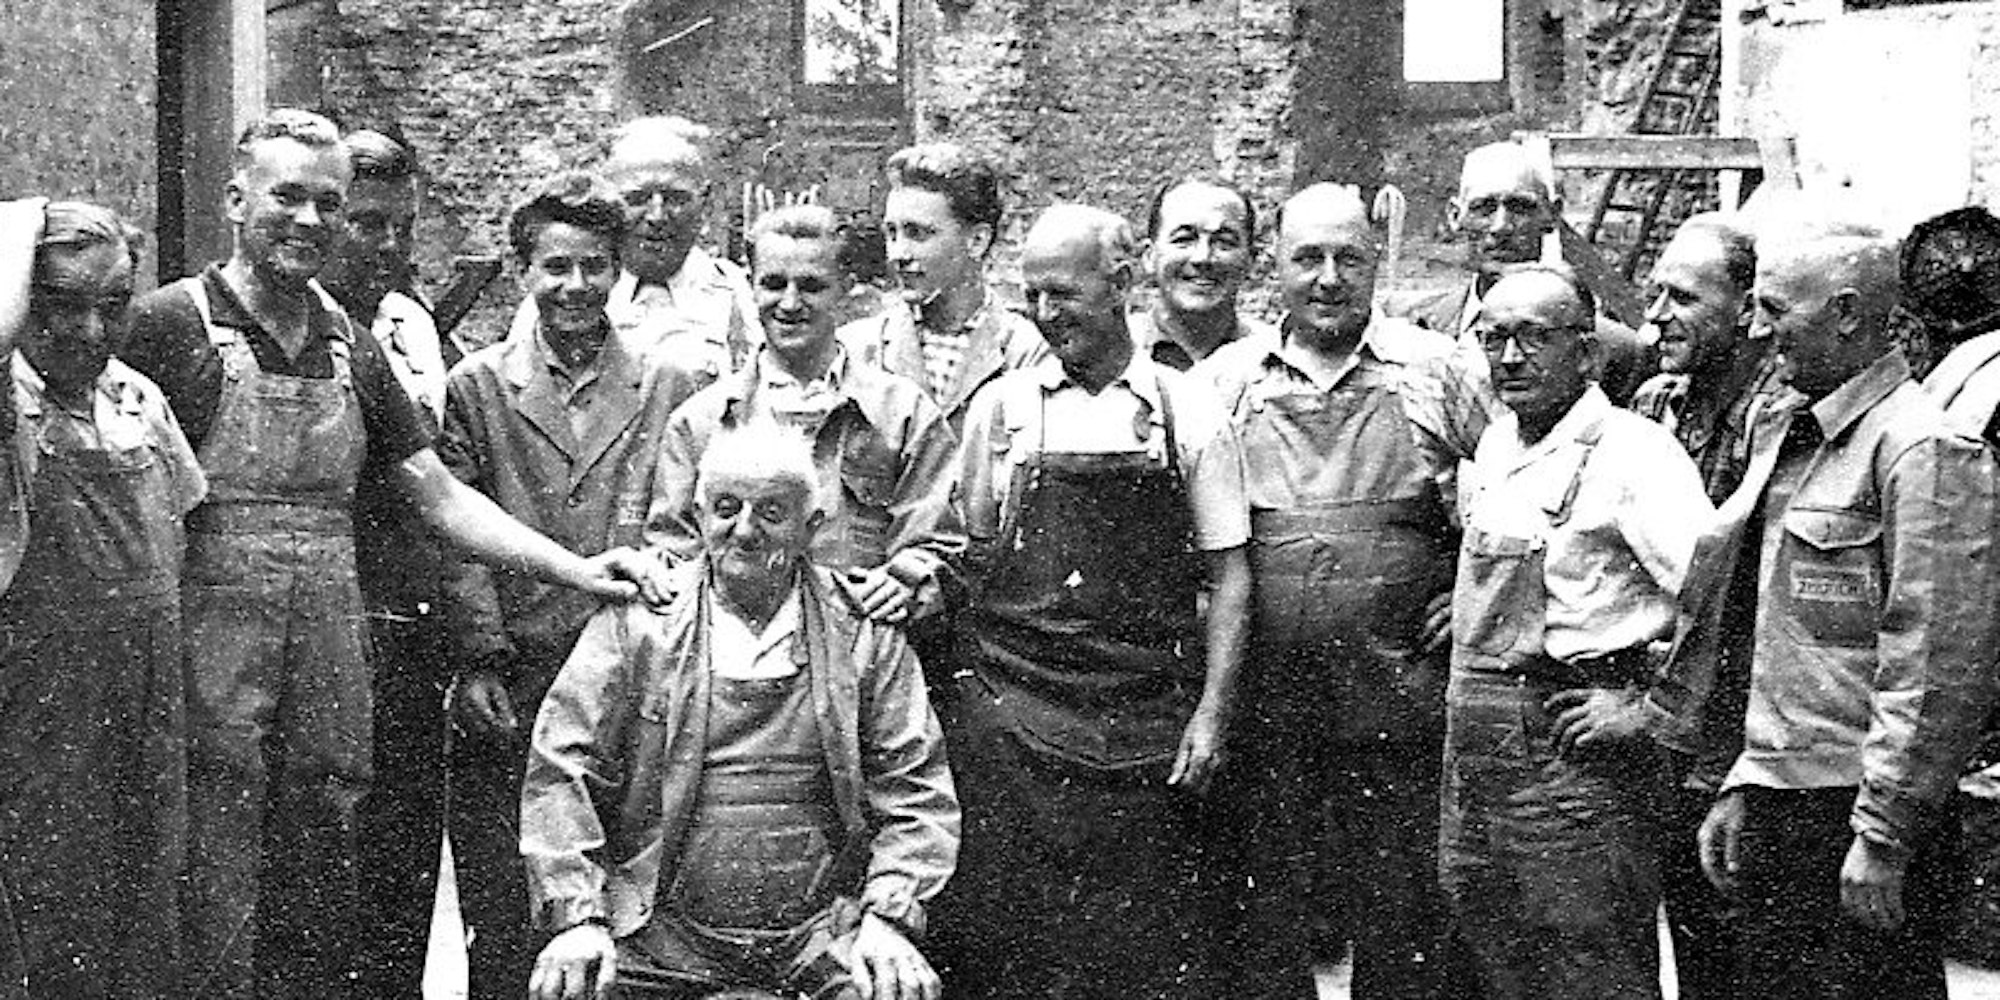 Die Mitarbeiter der Sieger-Brennerei schätzten die familiäre Atmosphäre innerhalb des Betriebes. Hier die Belegschaft von 1959.